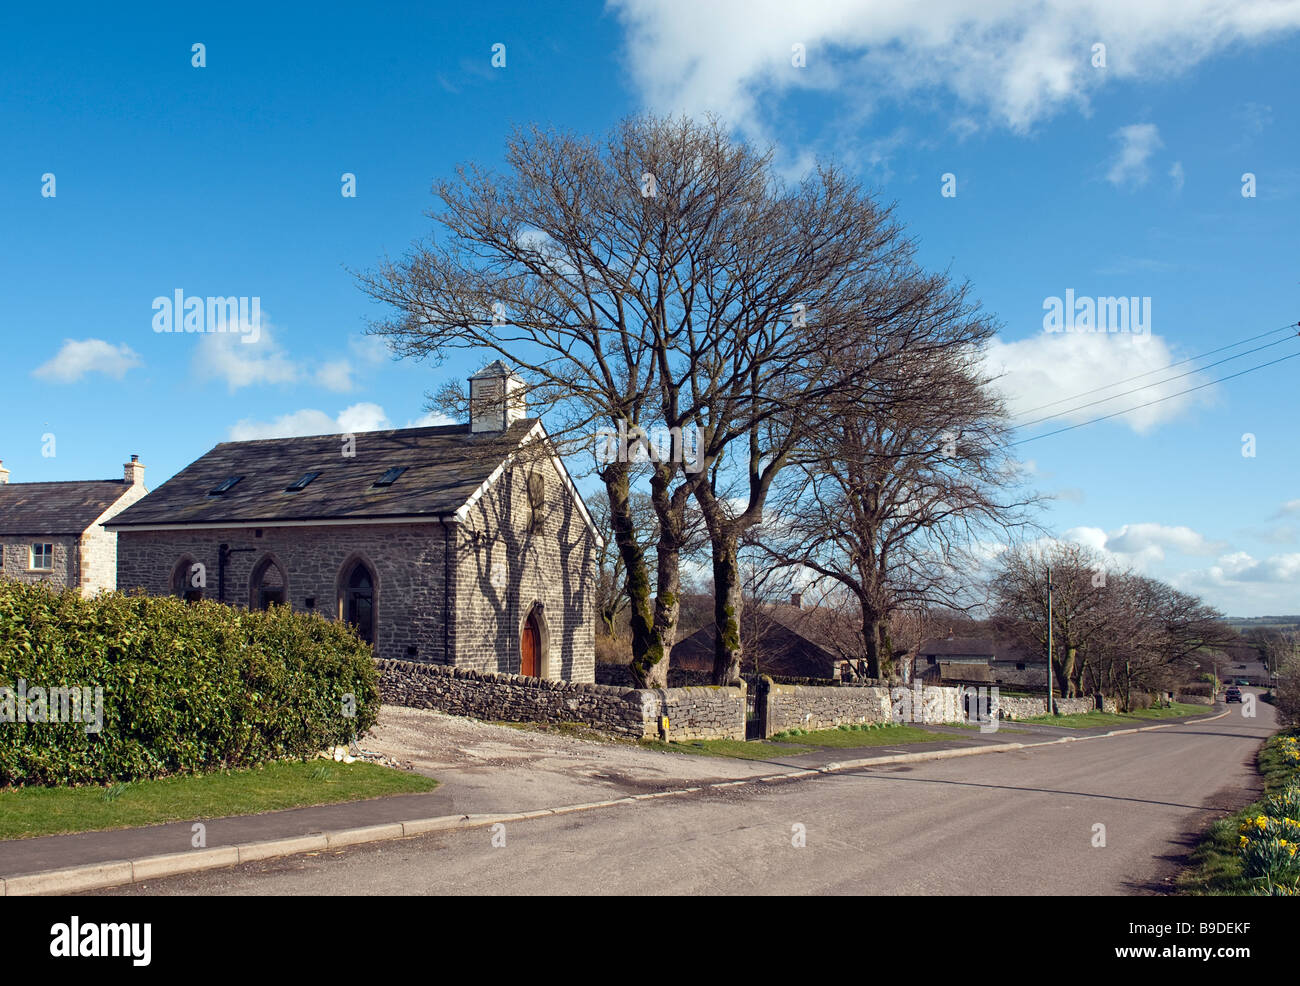 Ancienne église Unitarienne sur la route principale dans la région de Flagg, 'Peak District, Derbyshire, Angleterre, 'Grande-bretagne', 'Royaume-Uni' Banque D'Images